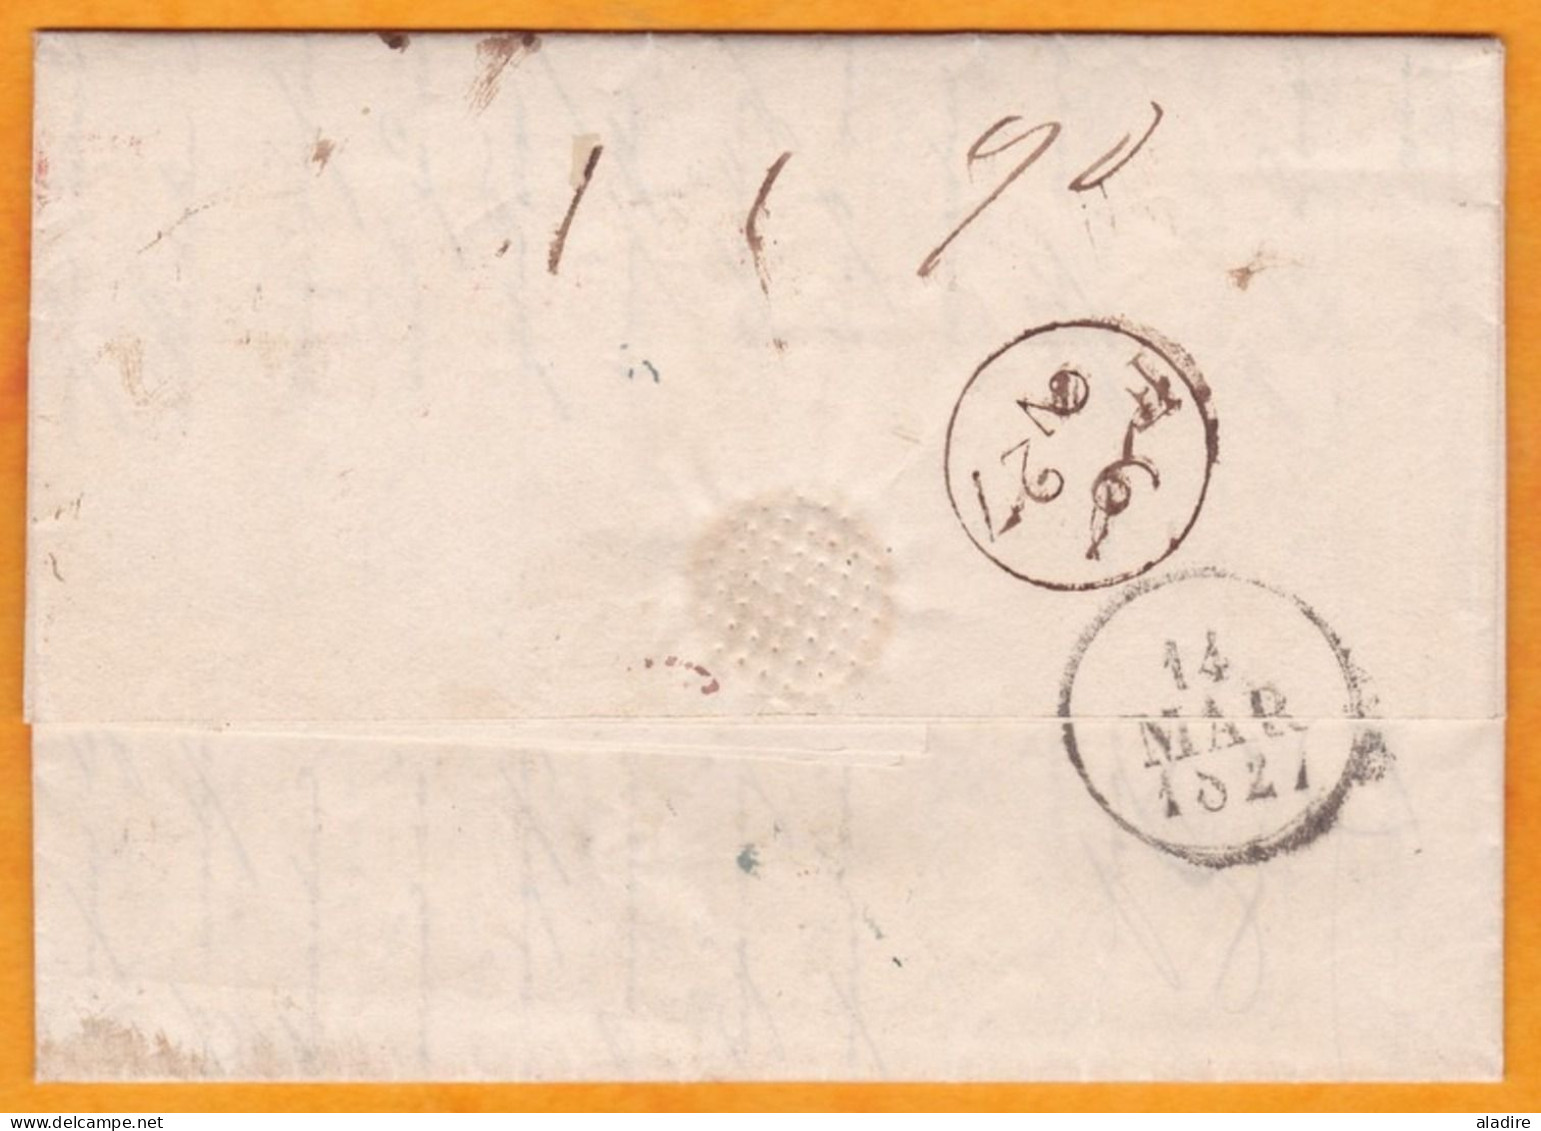 1827 - KGIV - lettre de Londres, GB vers Bordeaux, France - griffe ANGLETERRE en rouge - cover from London to Bordeaux